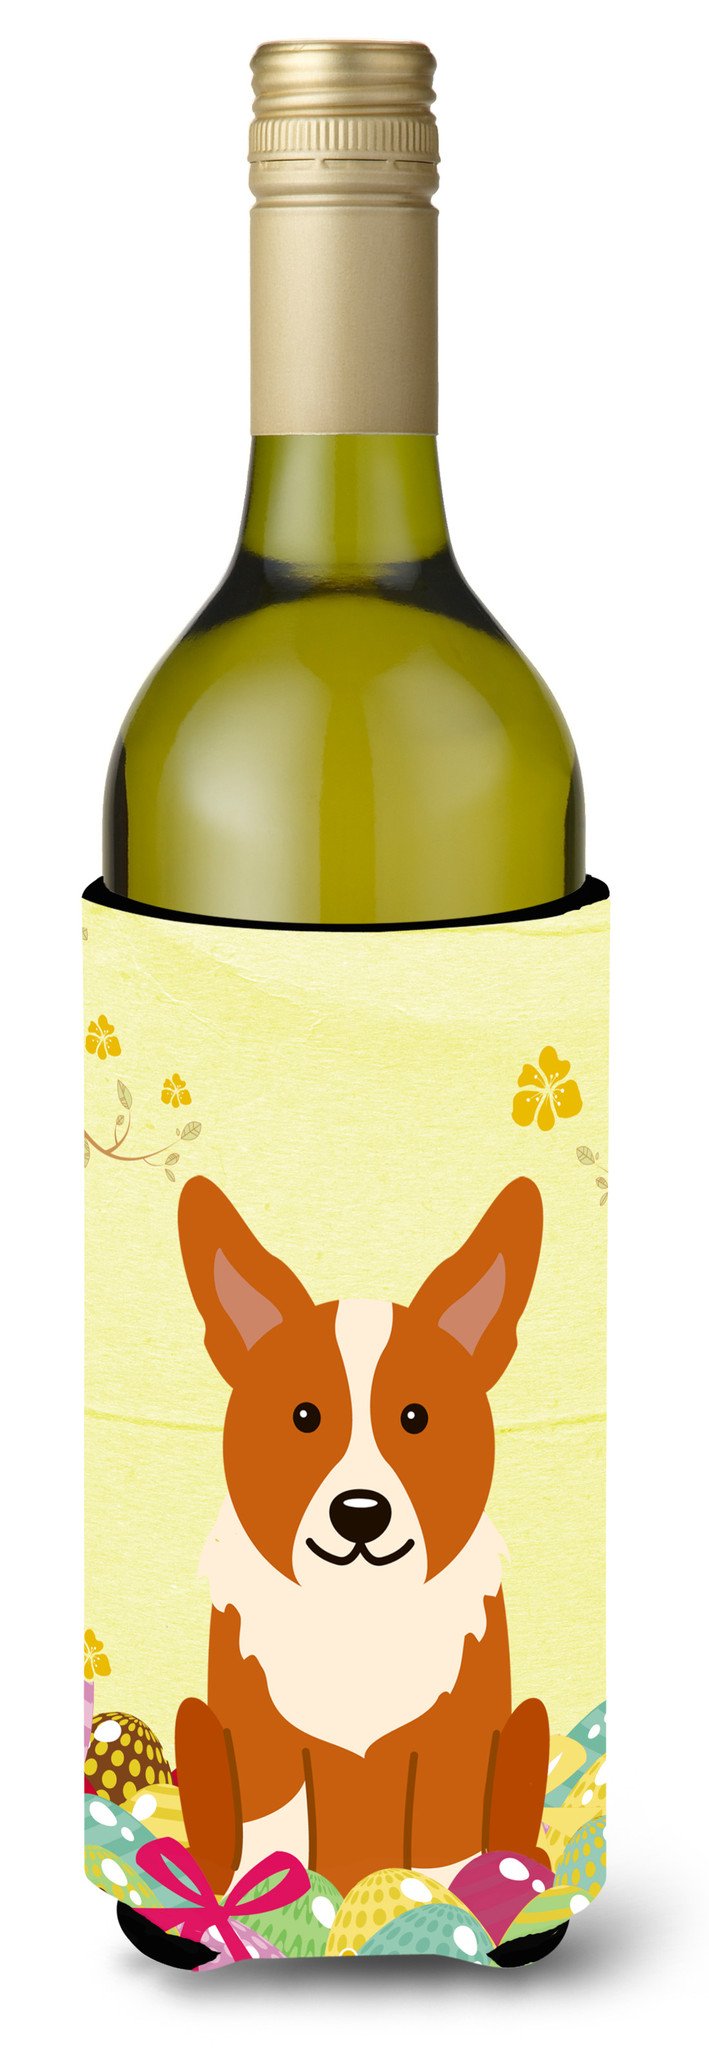 Easter Eggs Corgi Wine Bottle Beverge Insulator Hugger BB6100LITERK by Caroline's Treasures